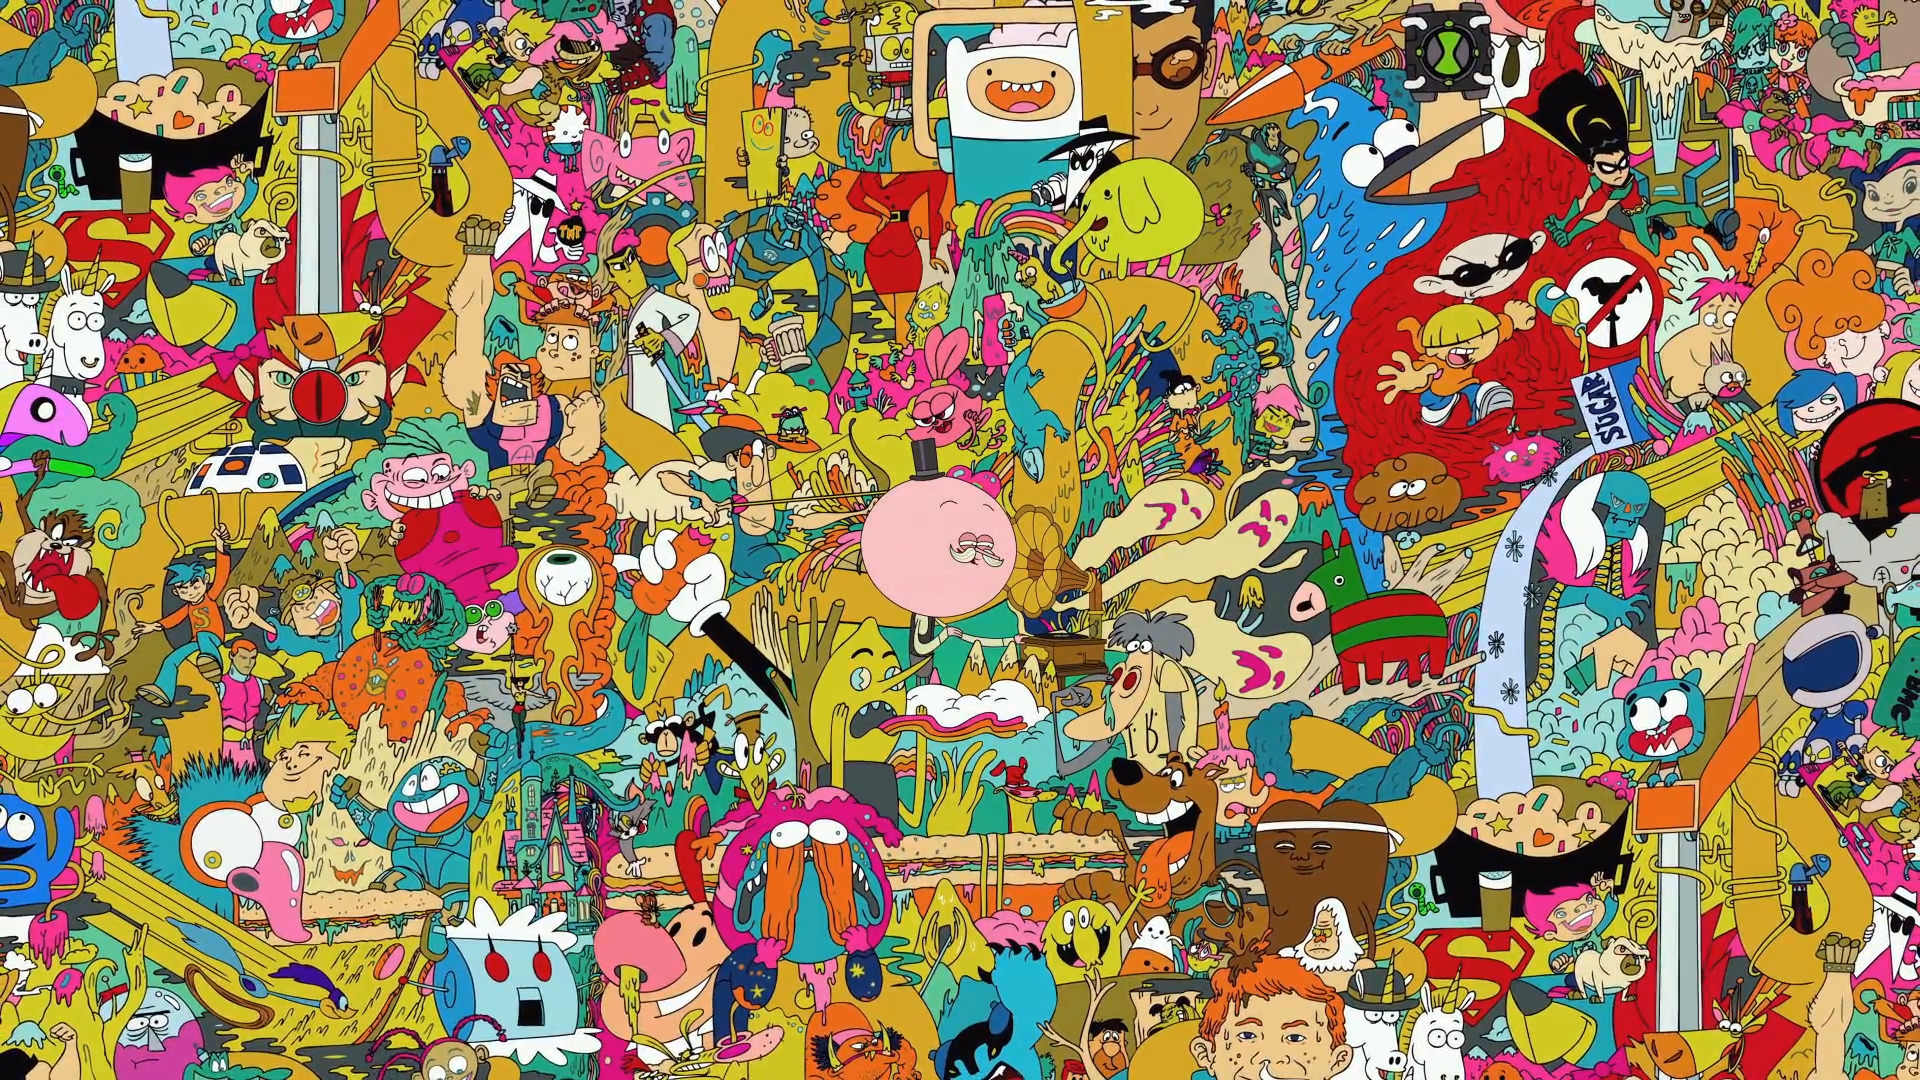 Cartoon Network Wallpaper